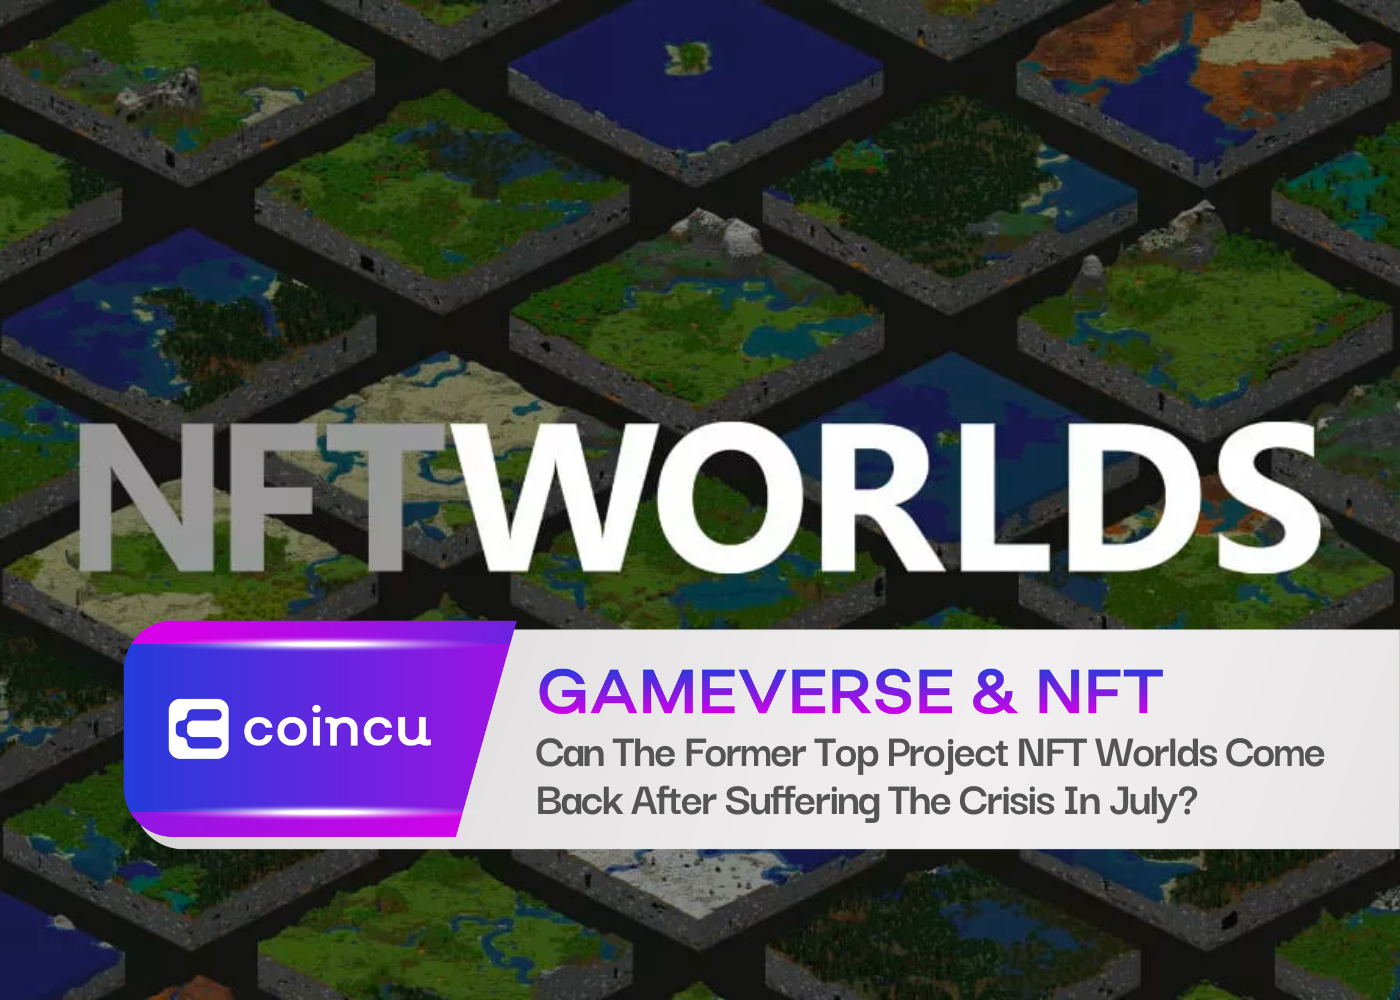 O antigo projeto NFT Worlds pode voltar depois de sofrer a crise em julho?